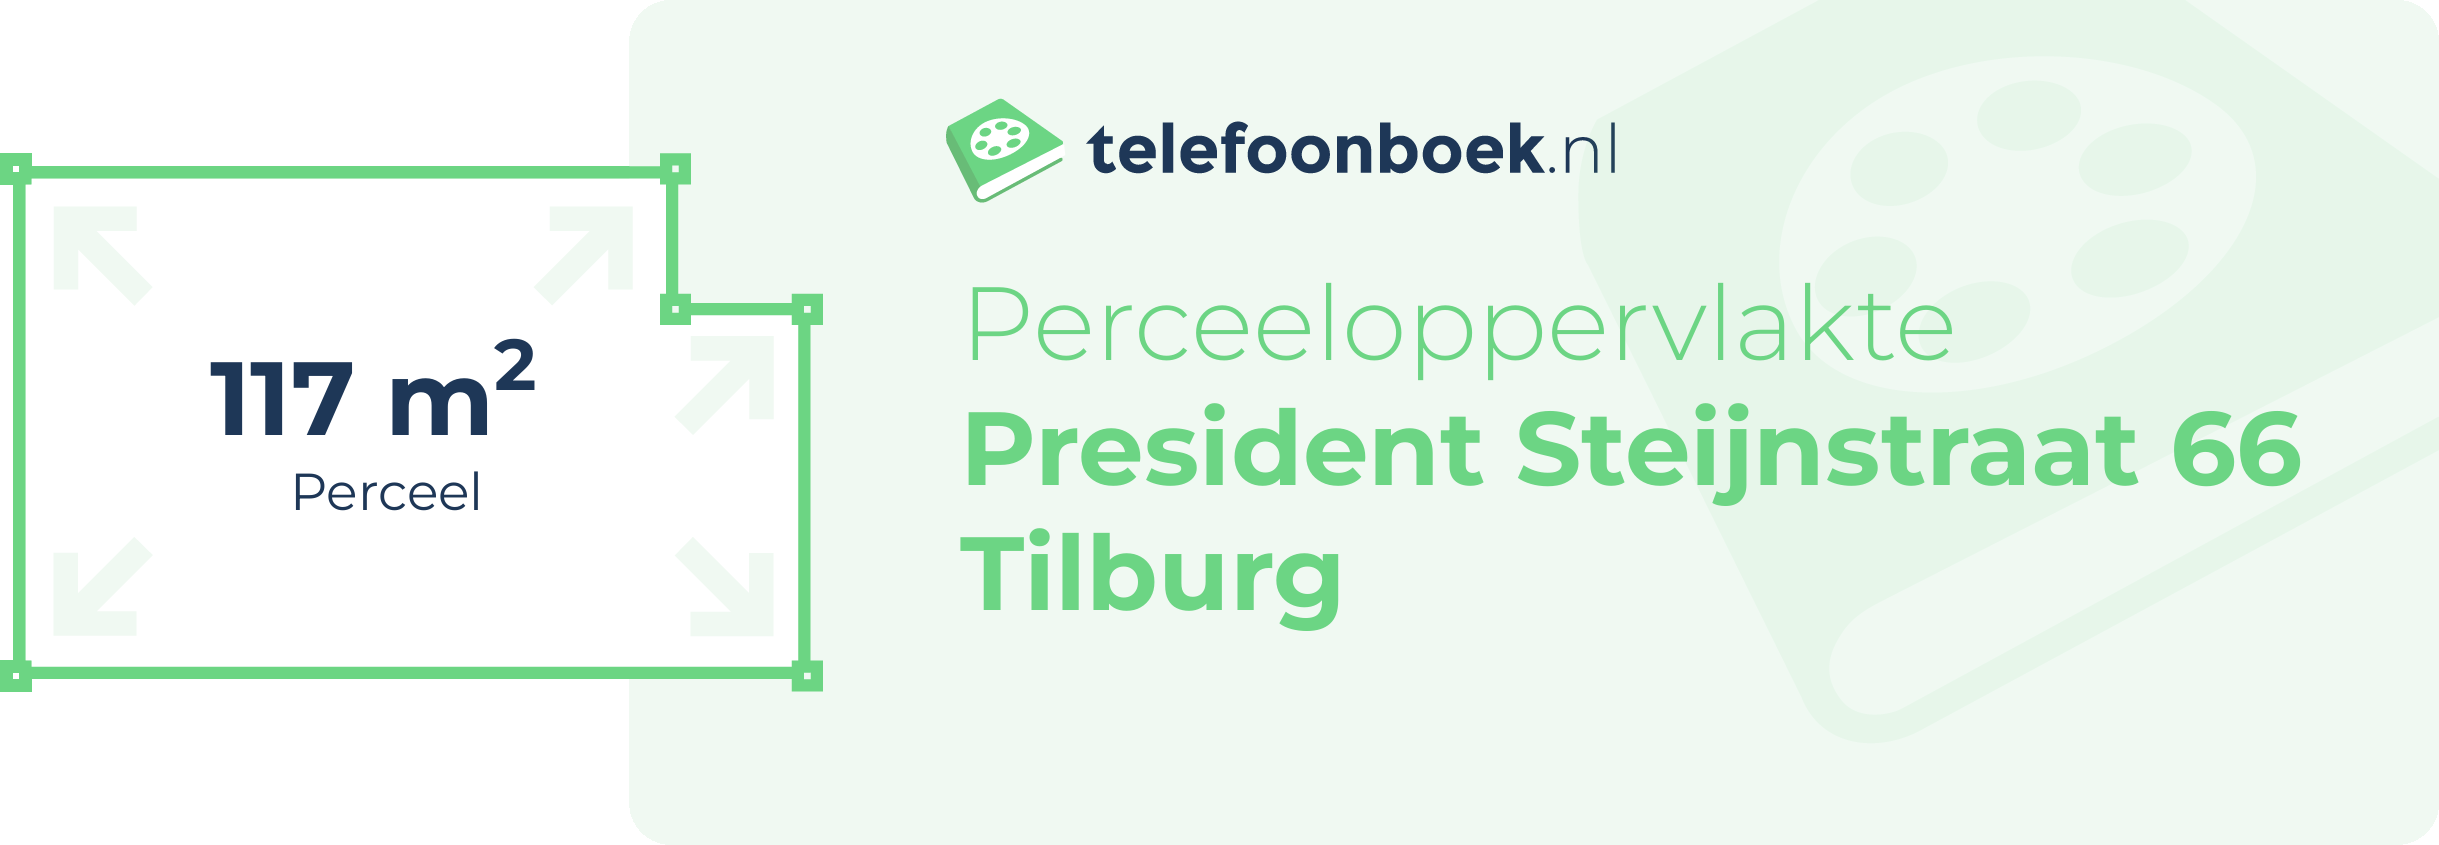 Perceeloppervlakte President Steijnstraat 66 Tilburg